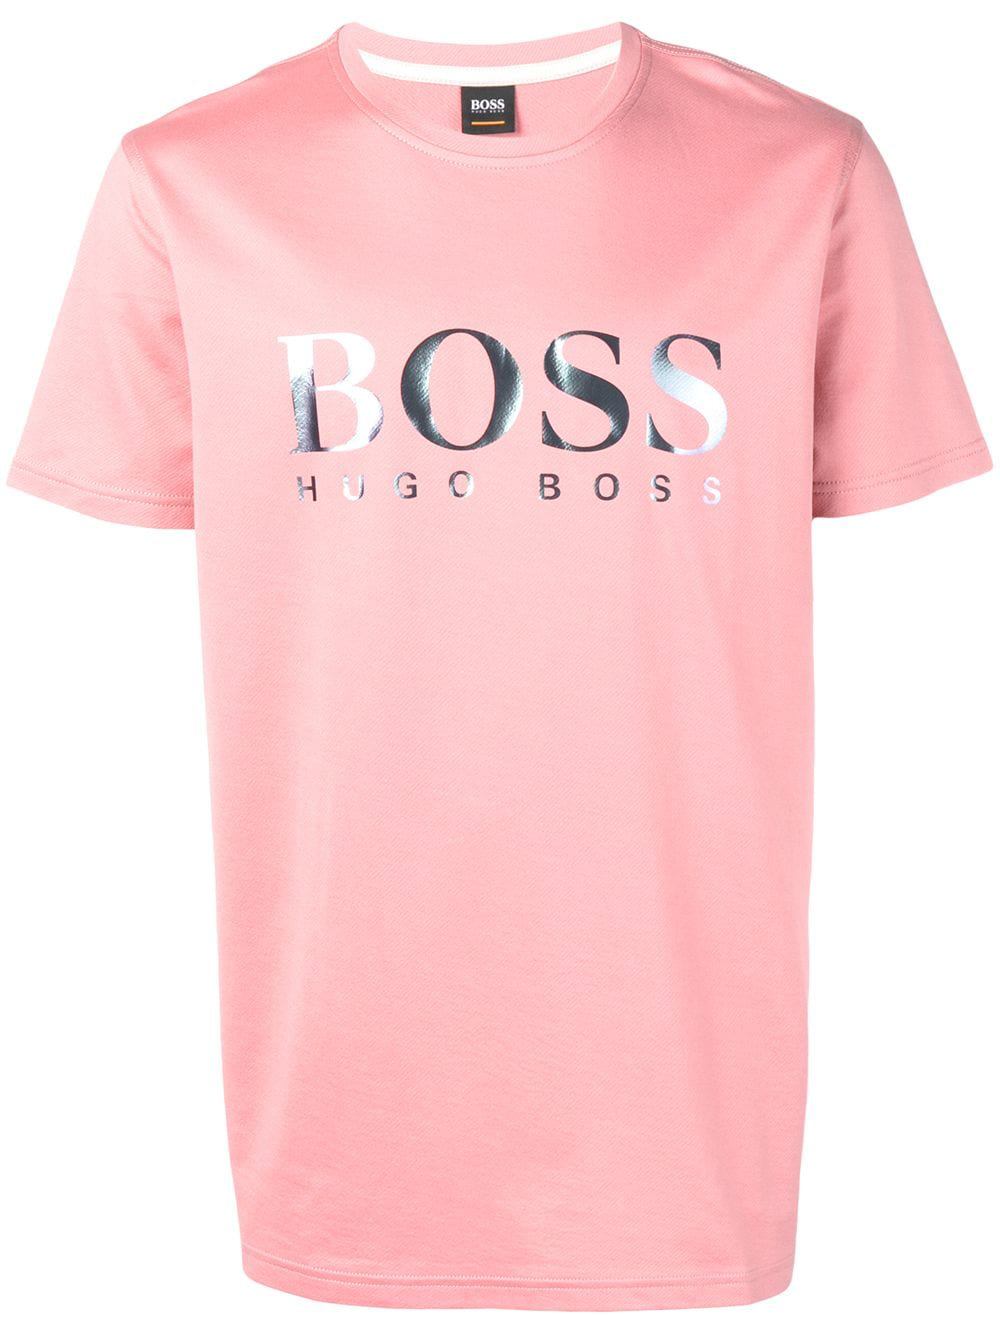 Hugo розовый. Майка Hugo Boss розовая. Футболка Hugo розовая. Футболка Хуго босс с принтом. Hugo футболка мужская розовая.